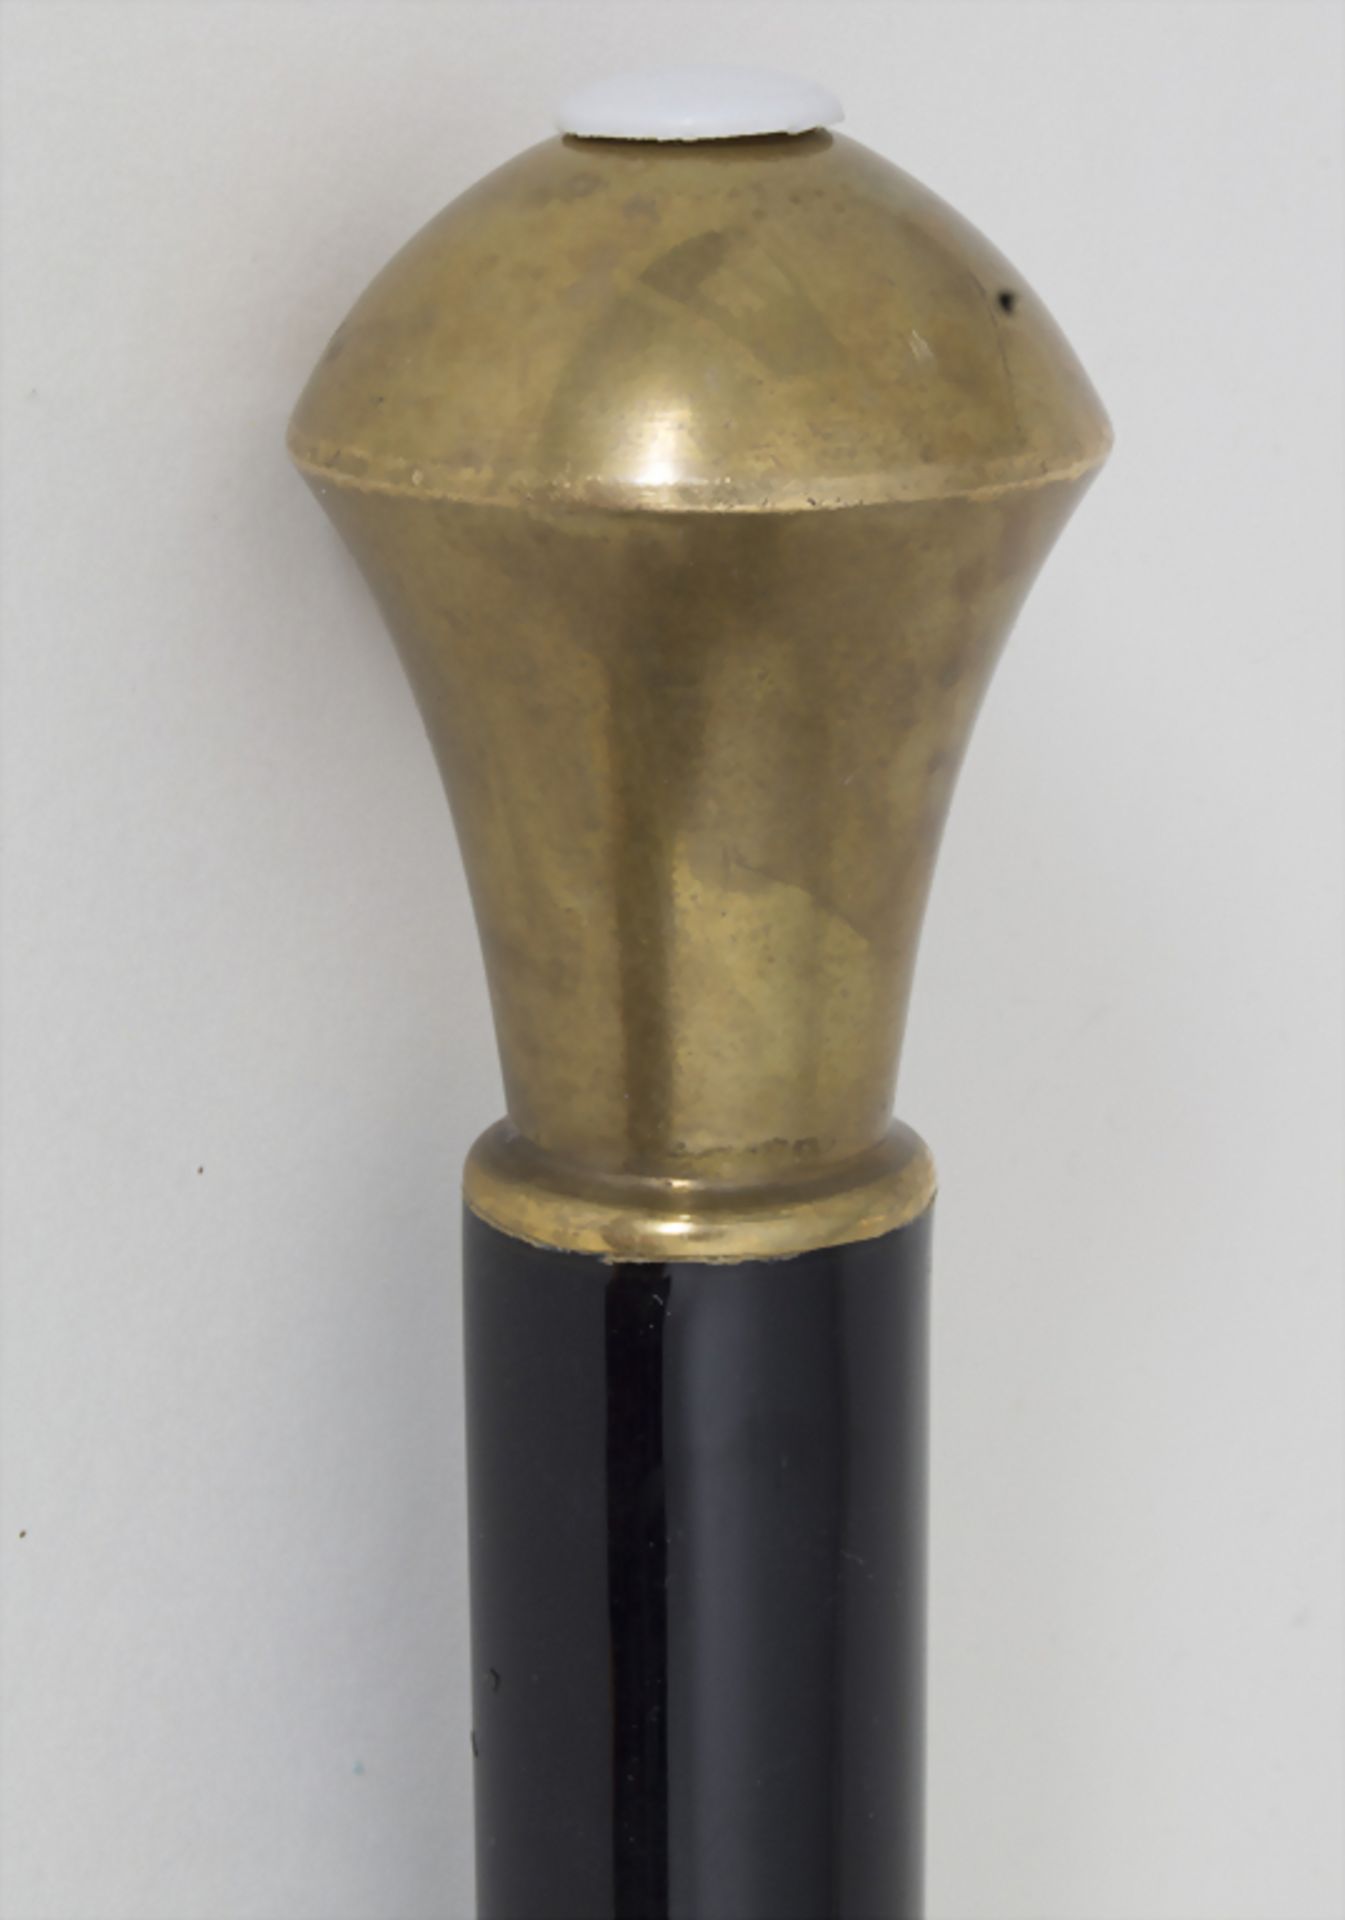 Gehstock mit Messingknauf / A cane with brass knob, um 1900